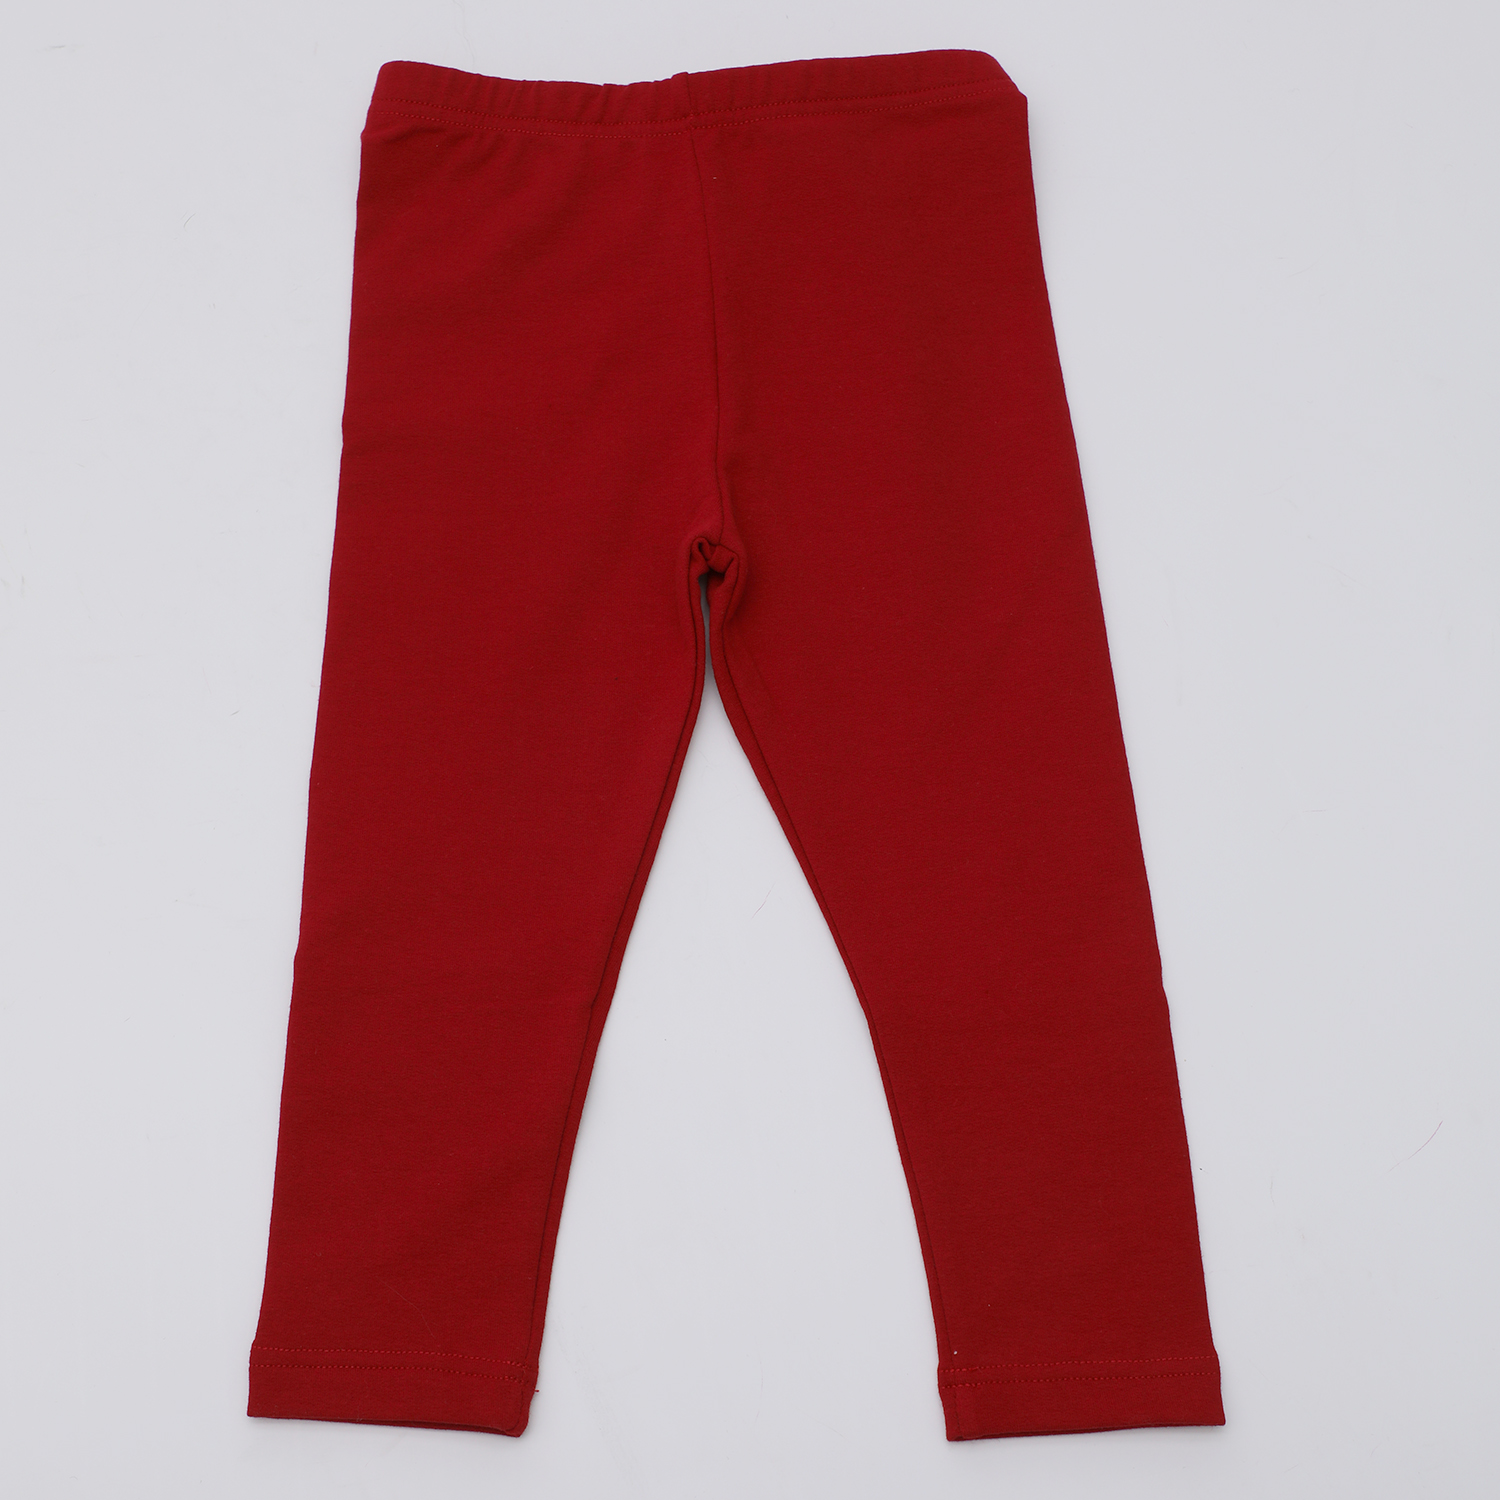 Παιδικά/Girls/Ρούχα/Παντελόνια SAM 0-13 - Παιδικό κολάν SAM 0-13 ΜΝΧ κόκκινο